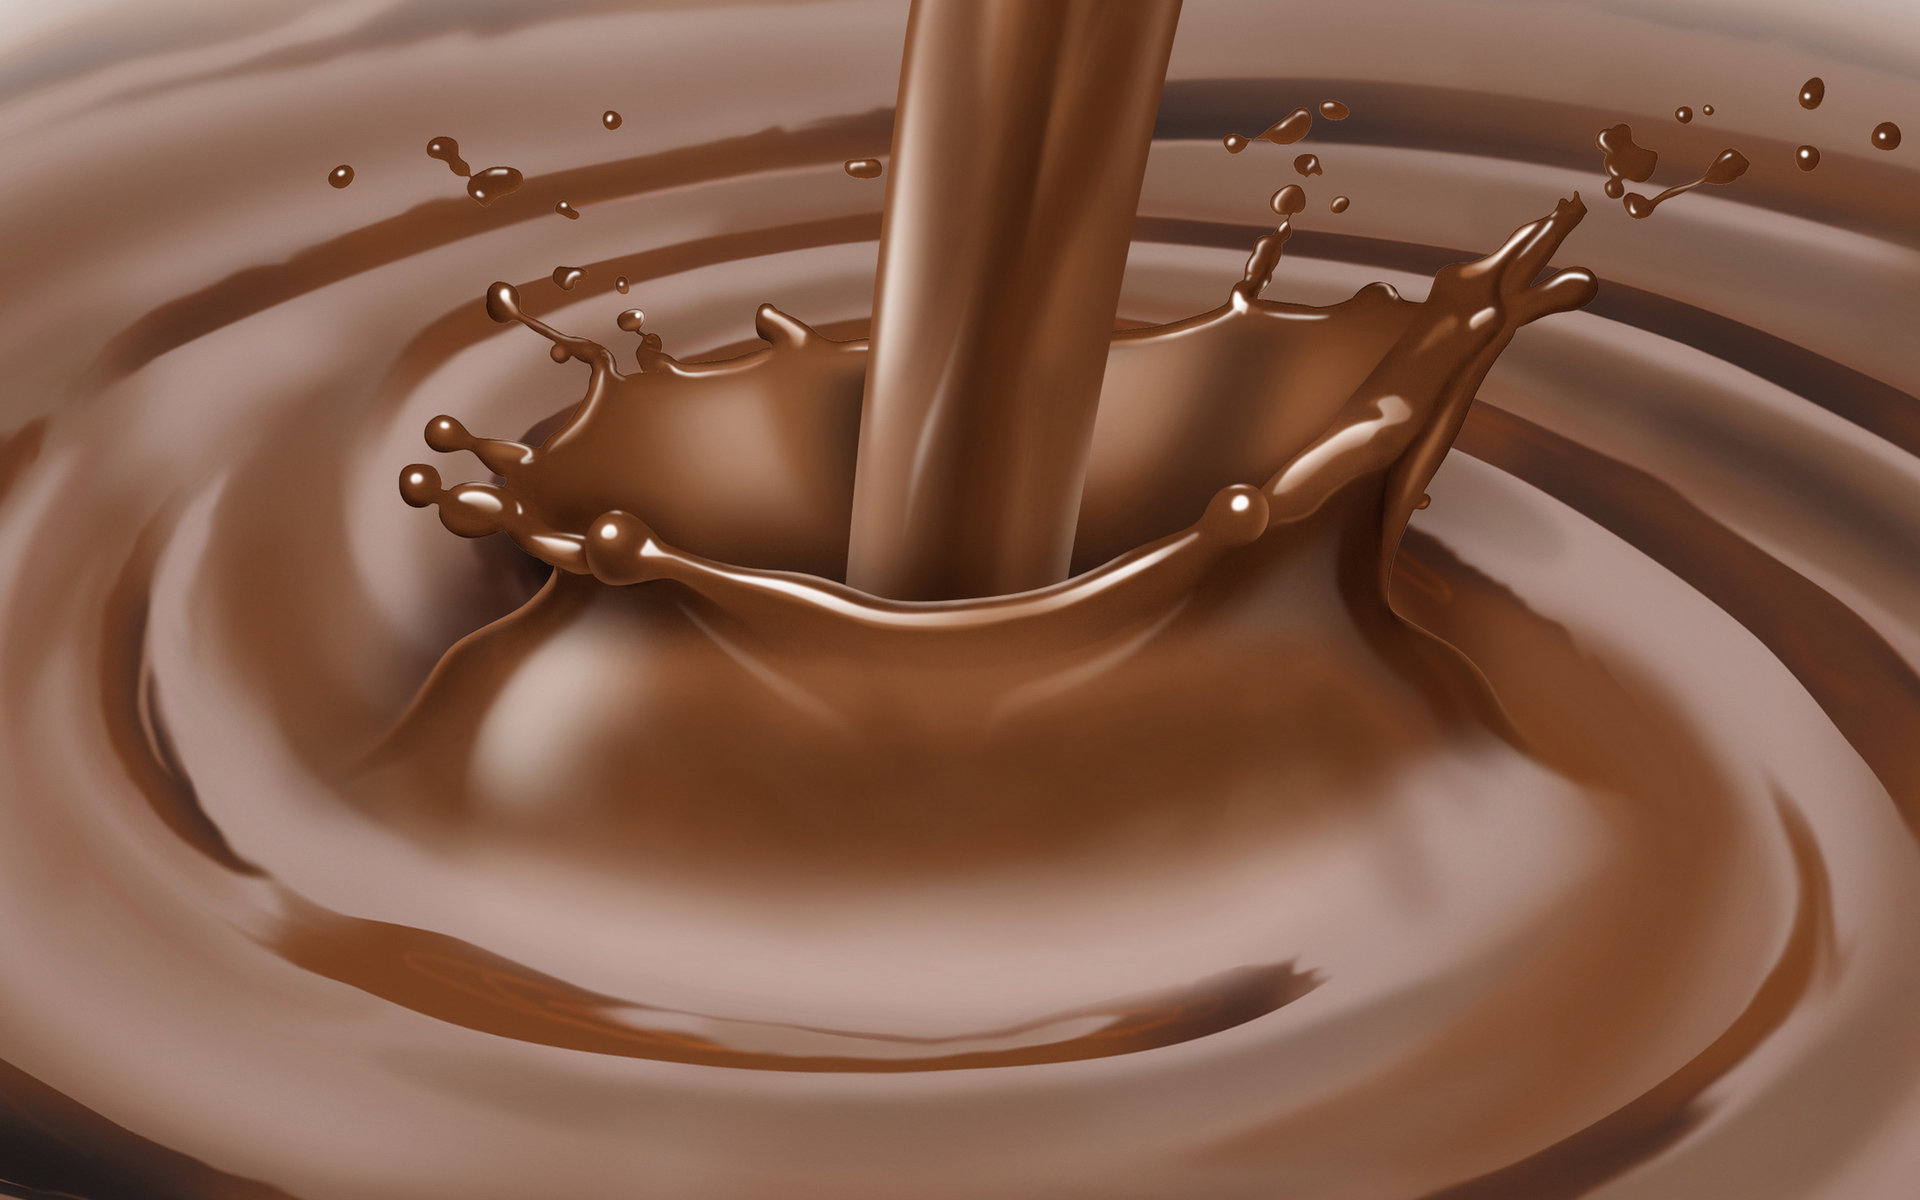 жидкий шоколад, текстура, фото, фон, скачать, hot chocolate, texture, горячий шоколад